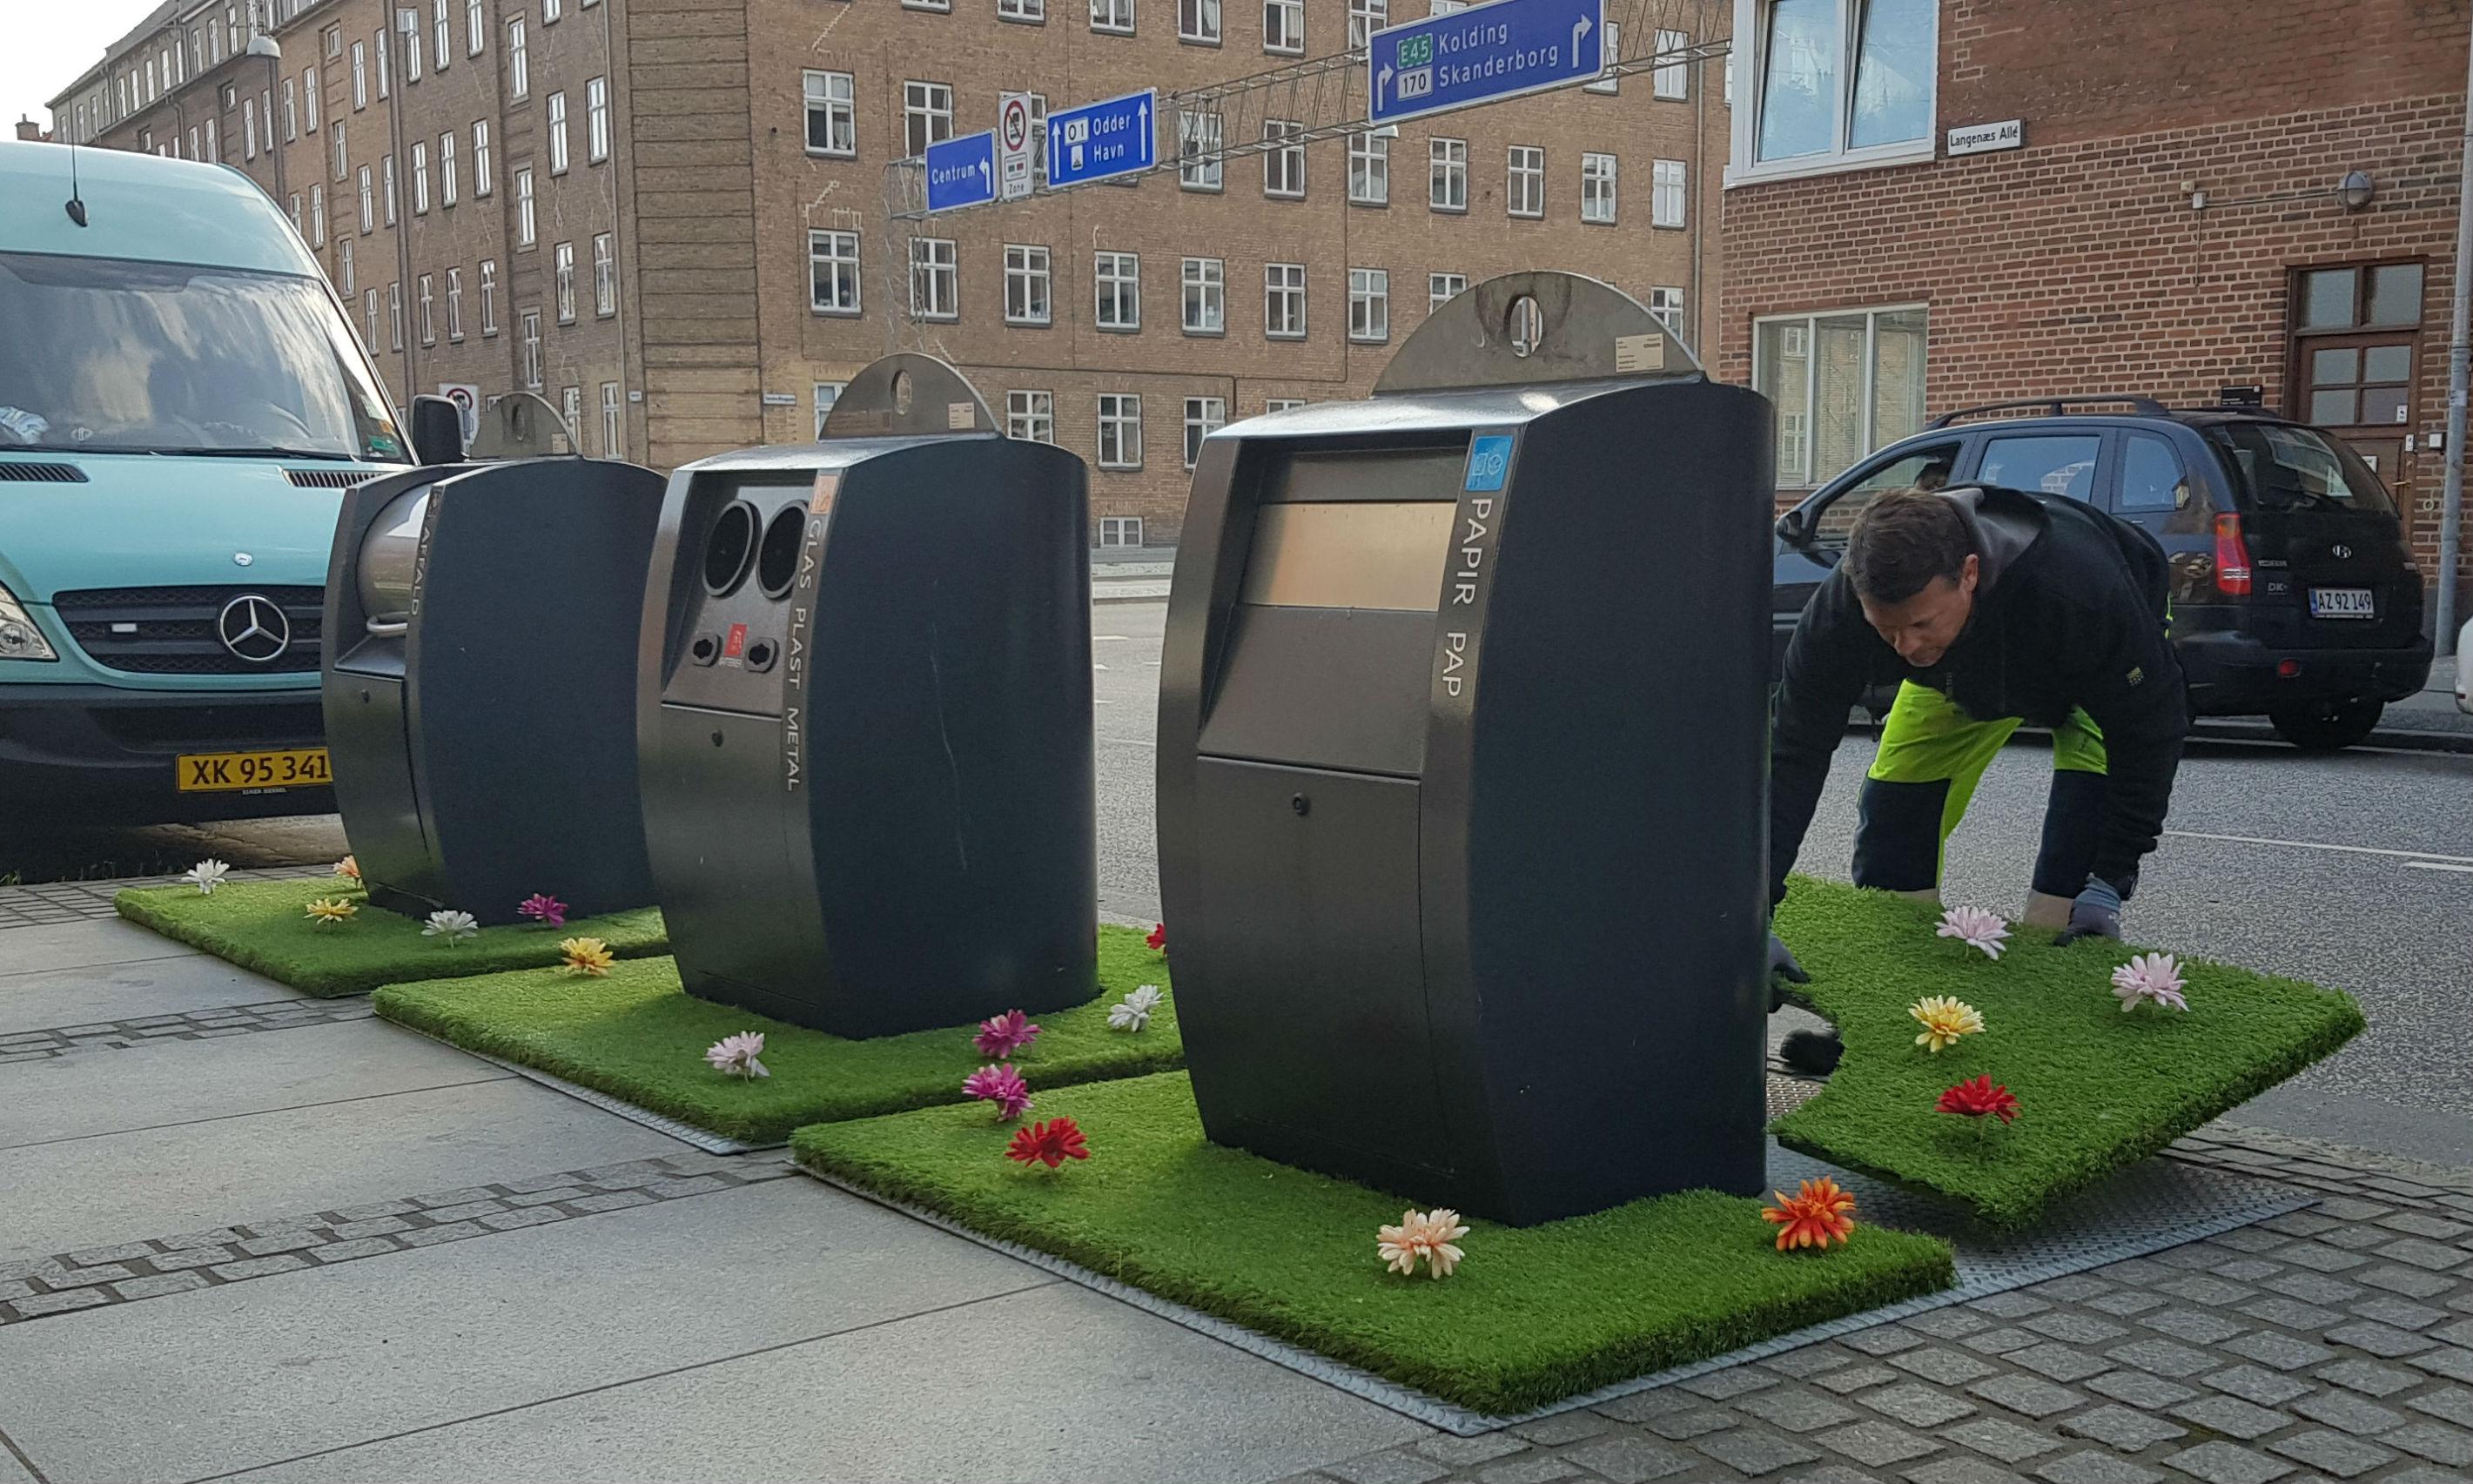 Affaldskuberne på Langenæs i Aarhus blev tirsdag omgivet af blomsteroaser.